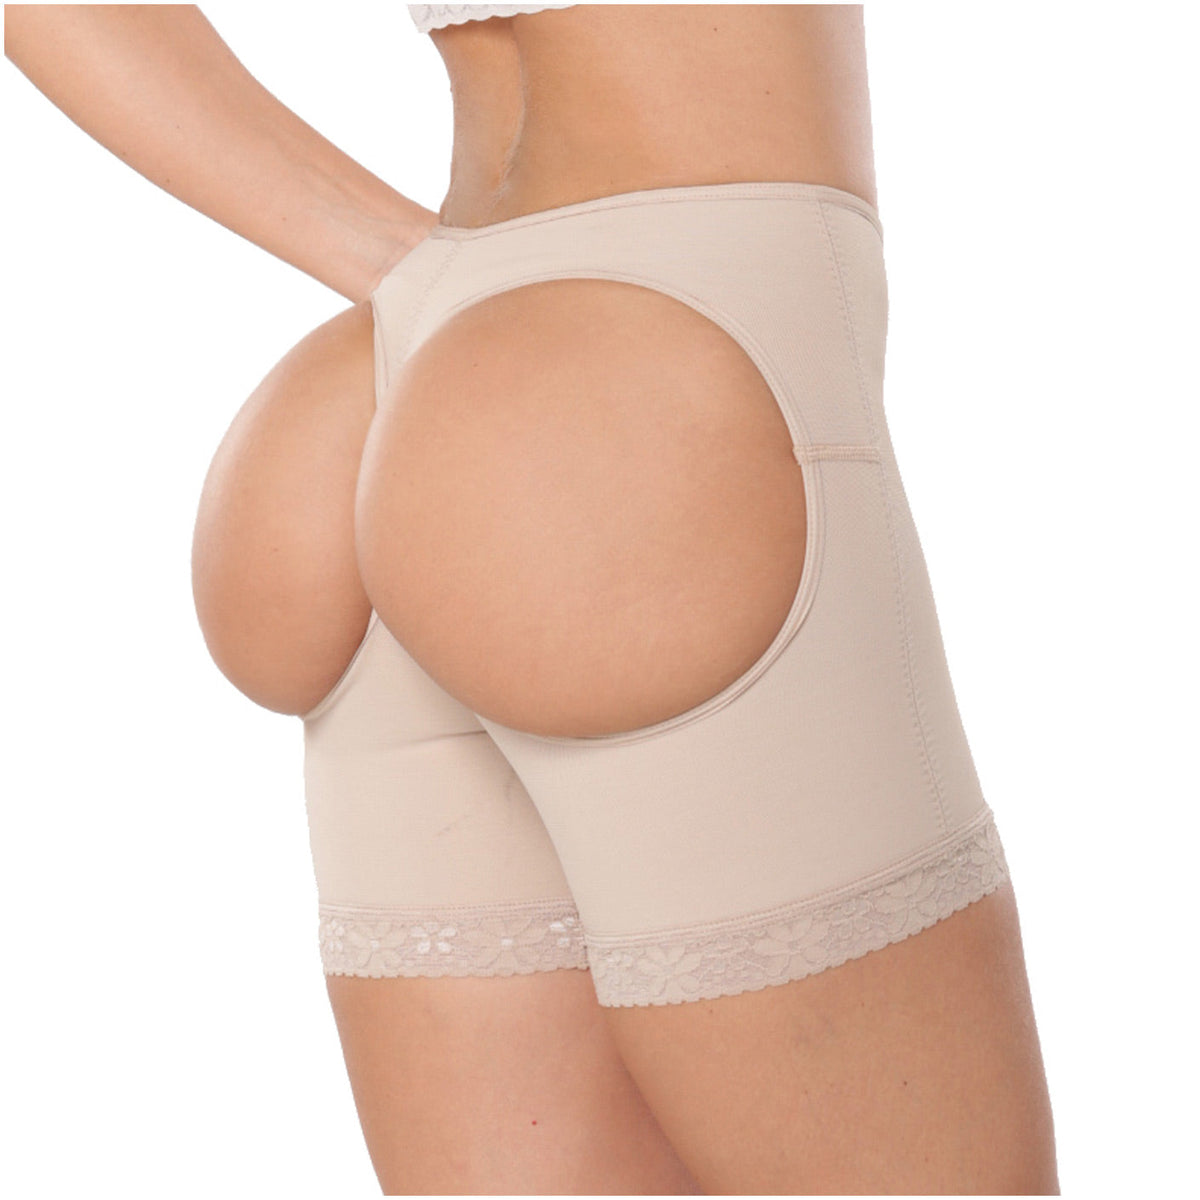 Diana y Geordi 2398 | Shorts moldeadores de levantamiento de glúteos sin costuras | Fajas moldeadoras extra firmes para medio muslo para mujer